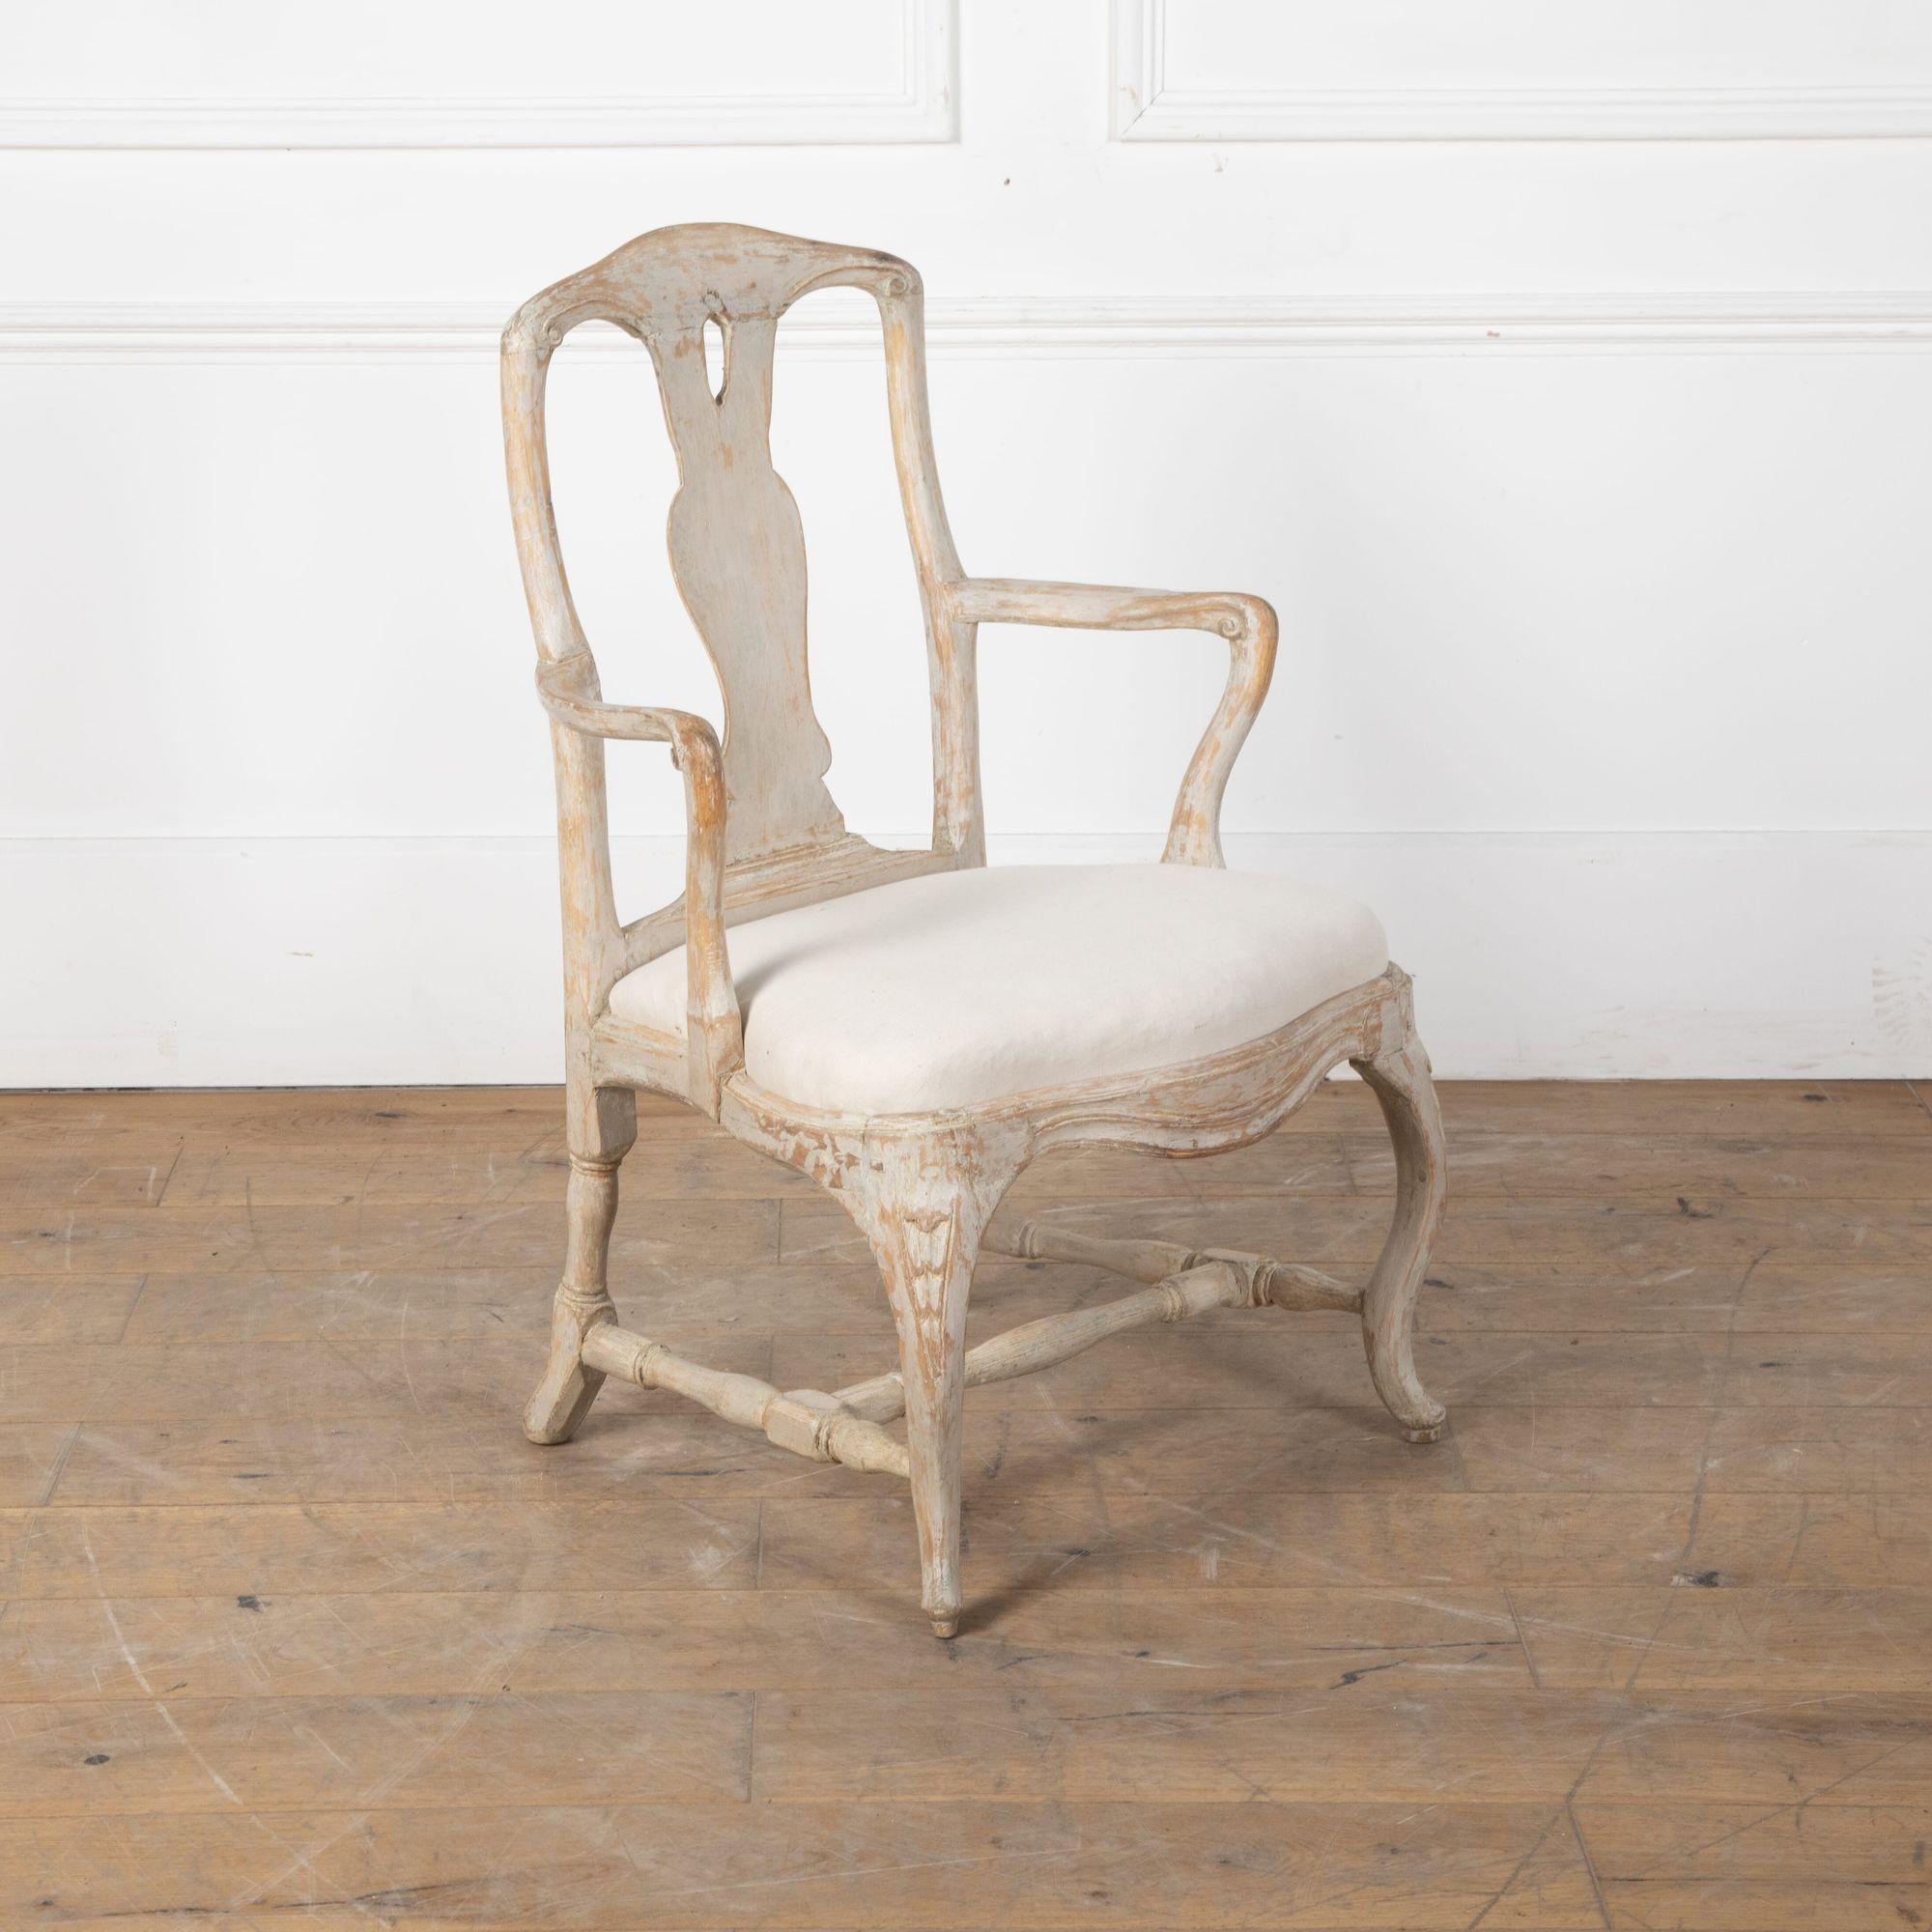 Stockholmer Rokokosessel aus dem späten 18. Jahrhundert.
Dieser Stuhl ist bis auf die Originalfarbe abgeschabt. 
um 1770. 


